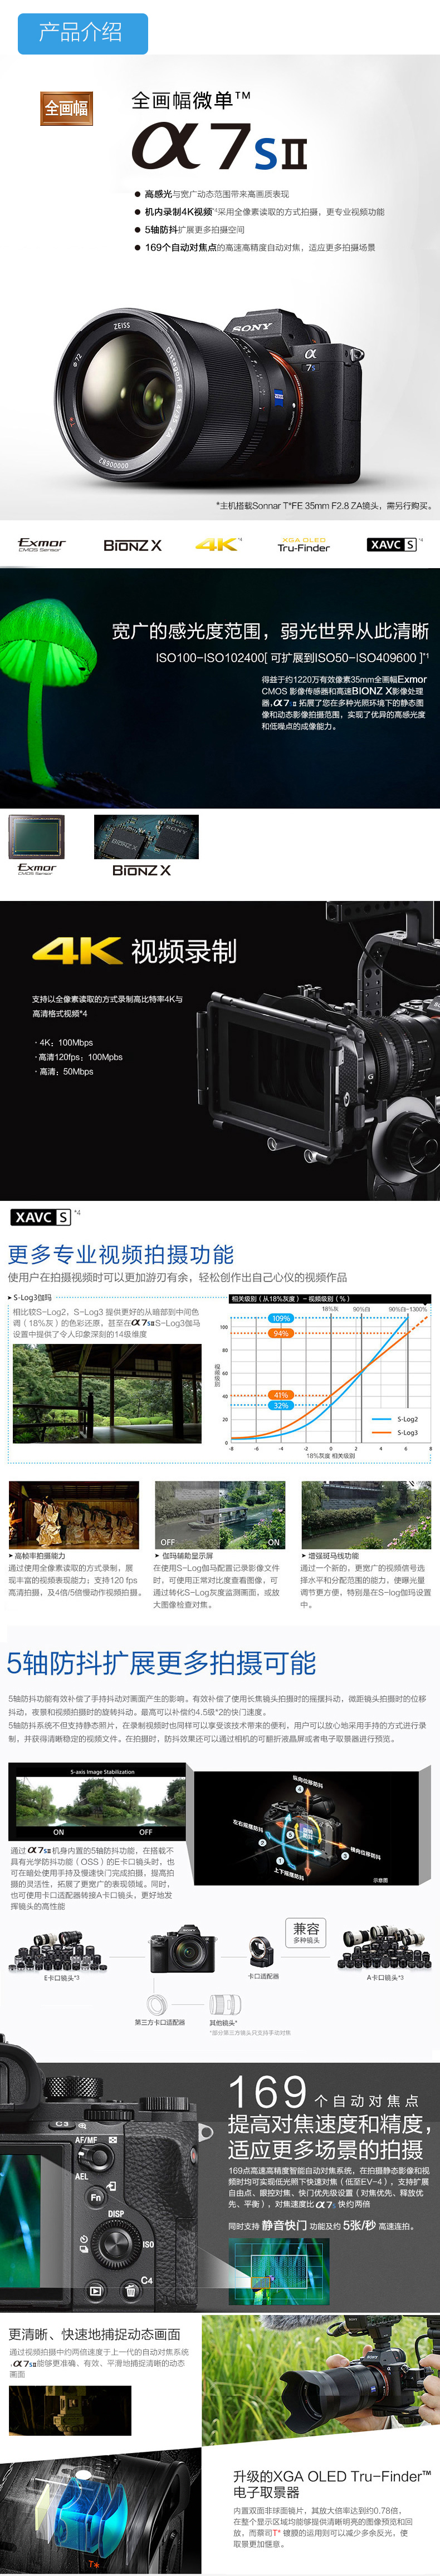 索尼(SONY) ILCE-A7SM2 (单机身 不含镜头) 五轴防抖 4K视频 高感光范围